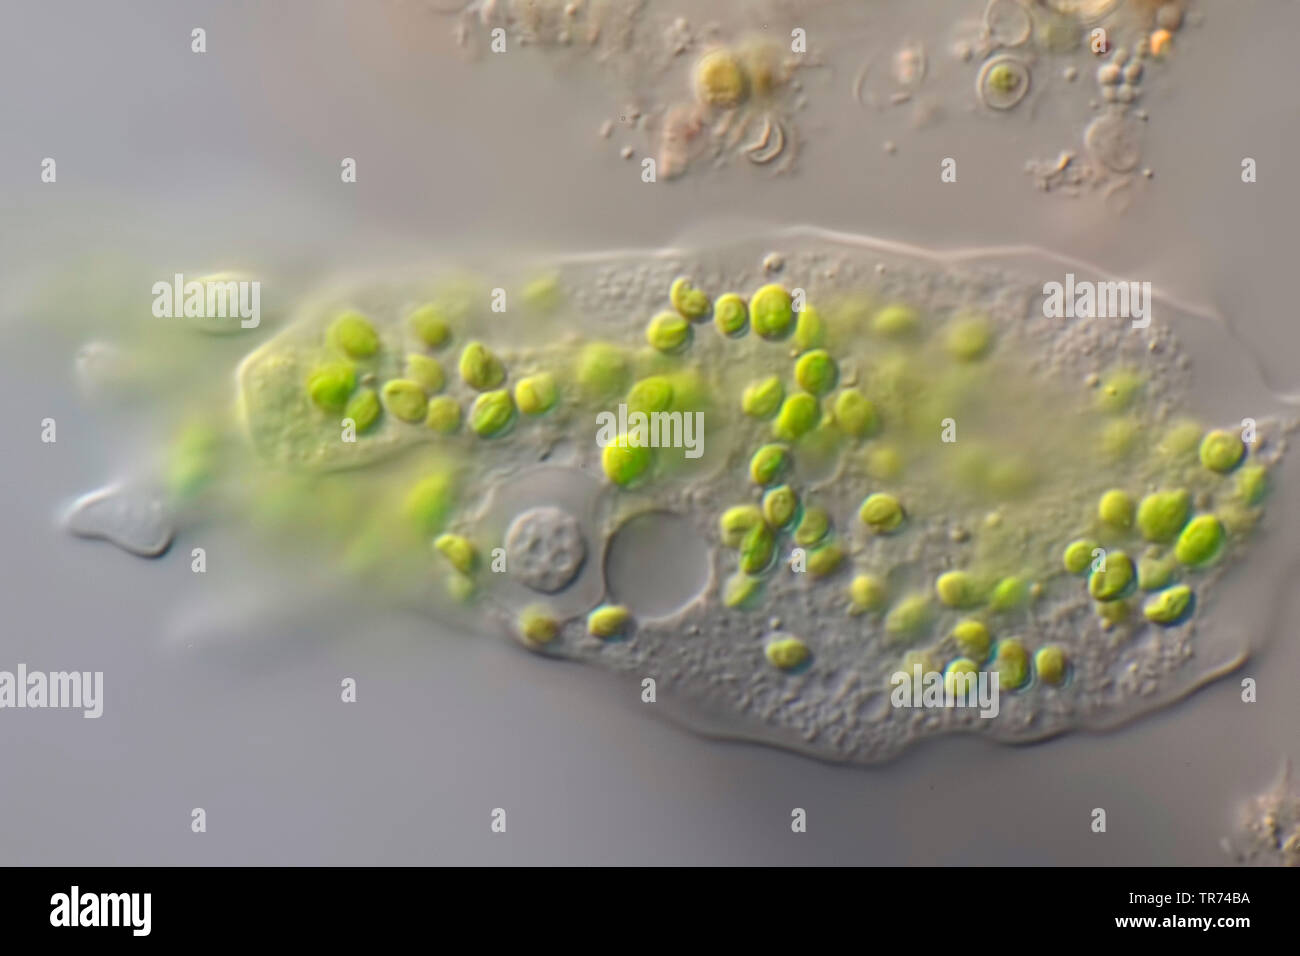 Amebas, Amöben (Amoebozoa), amöbe Fütterung auf grüne Algen, Differential Interferenz Kontrast Mikroskopie Stockfoto